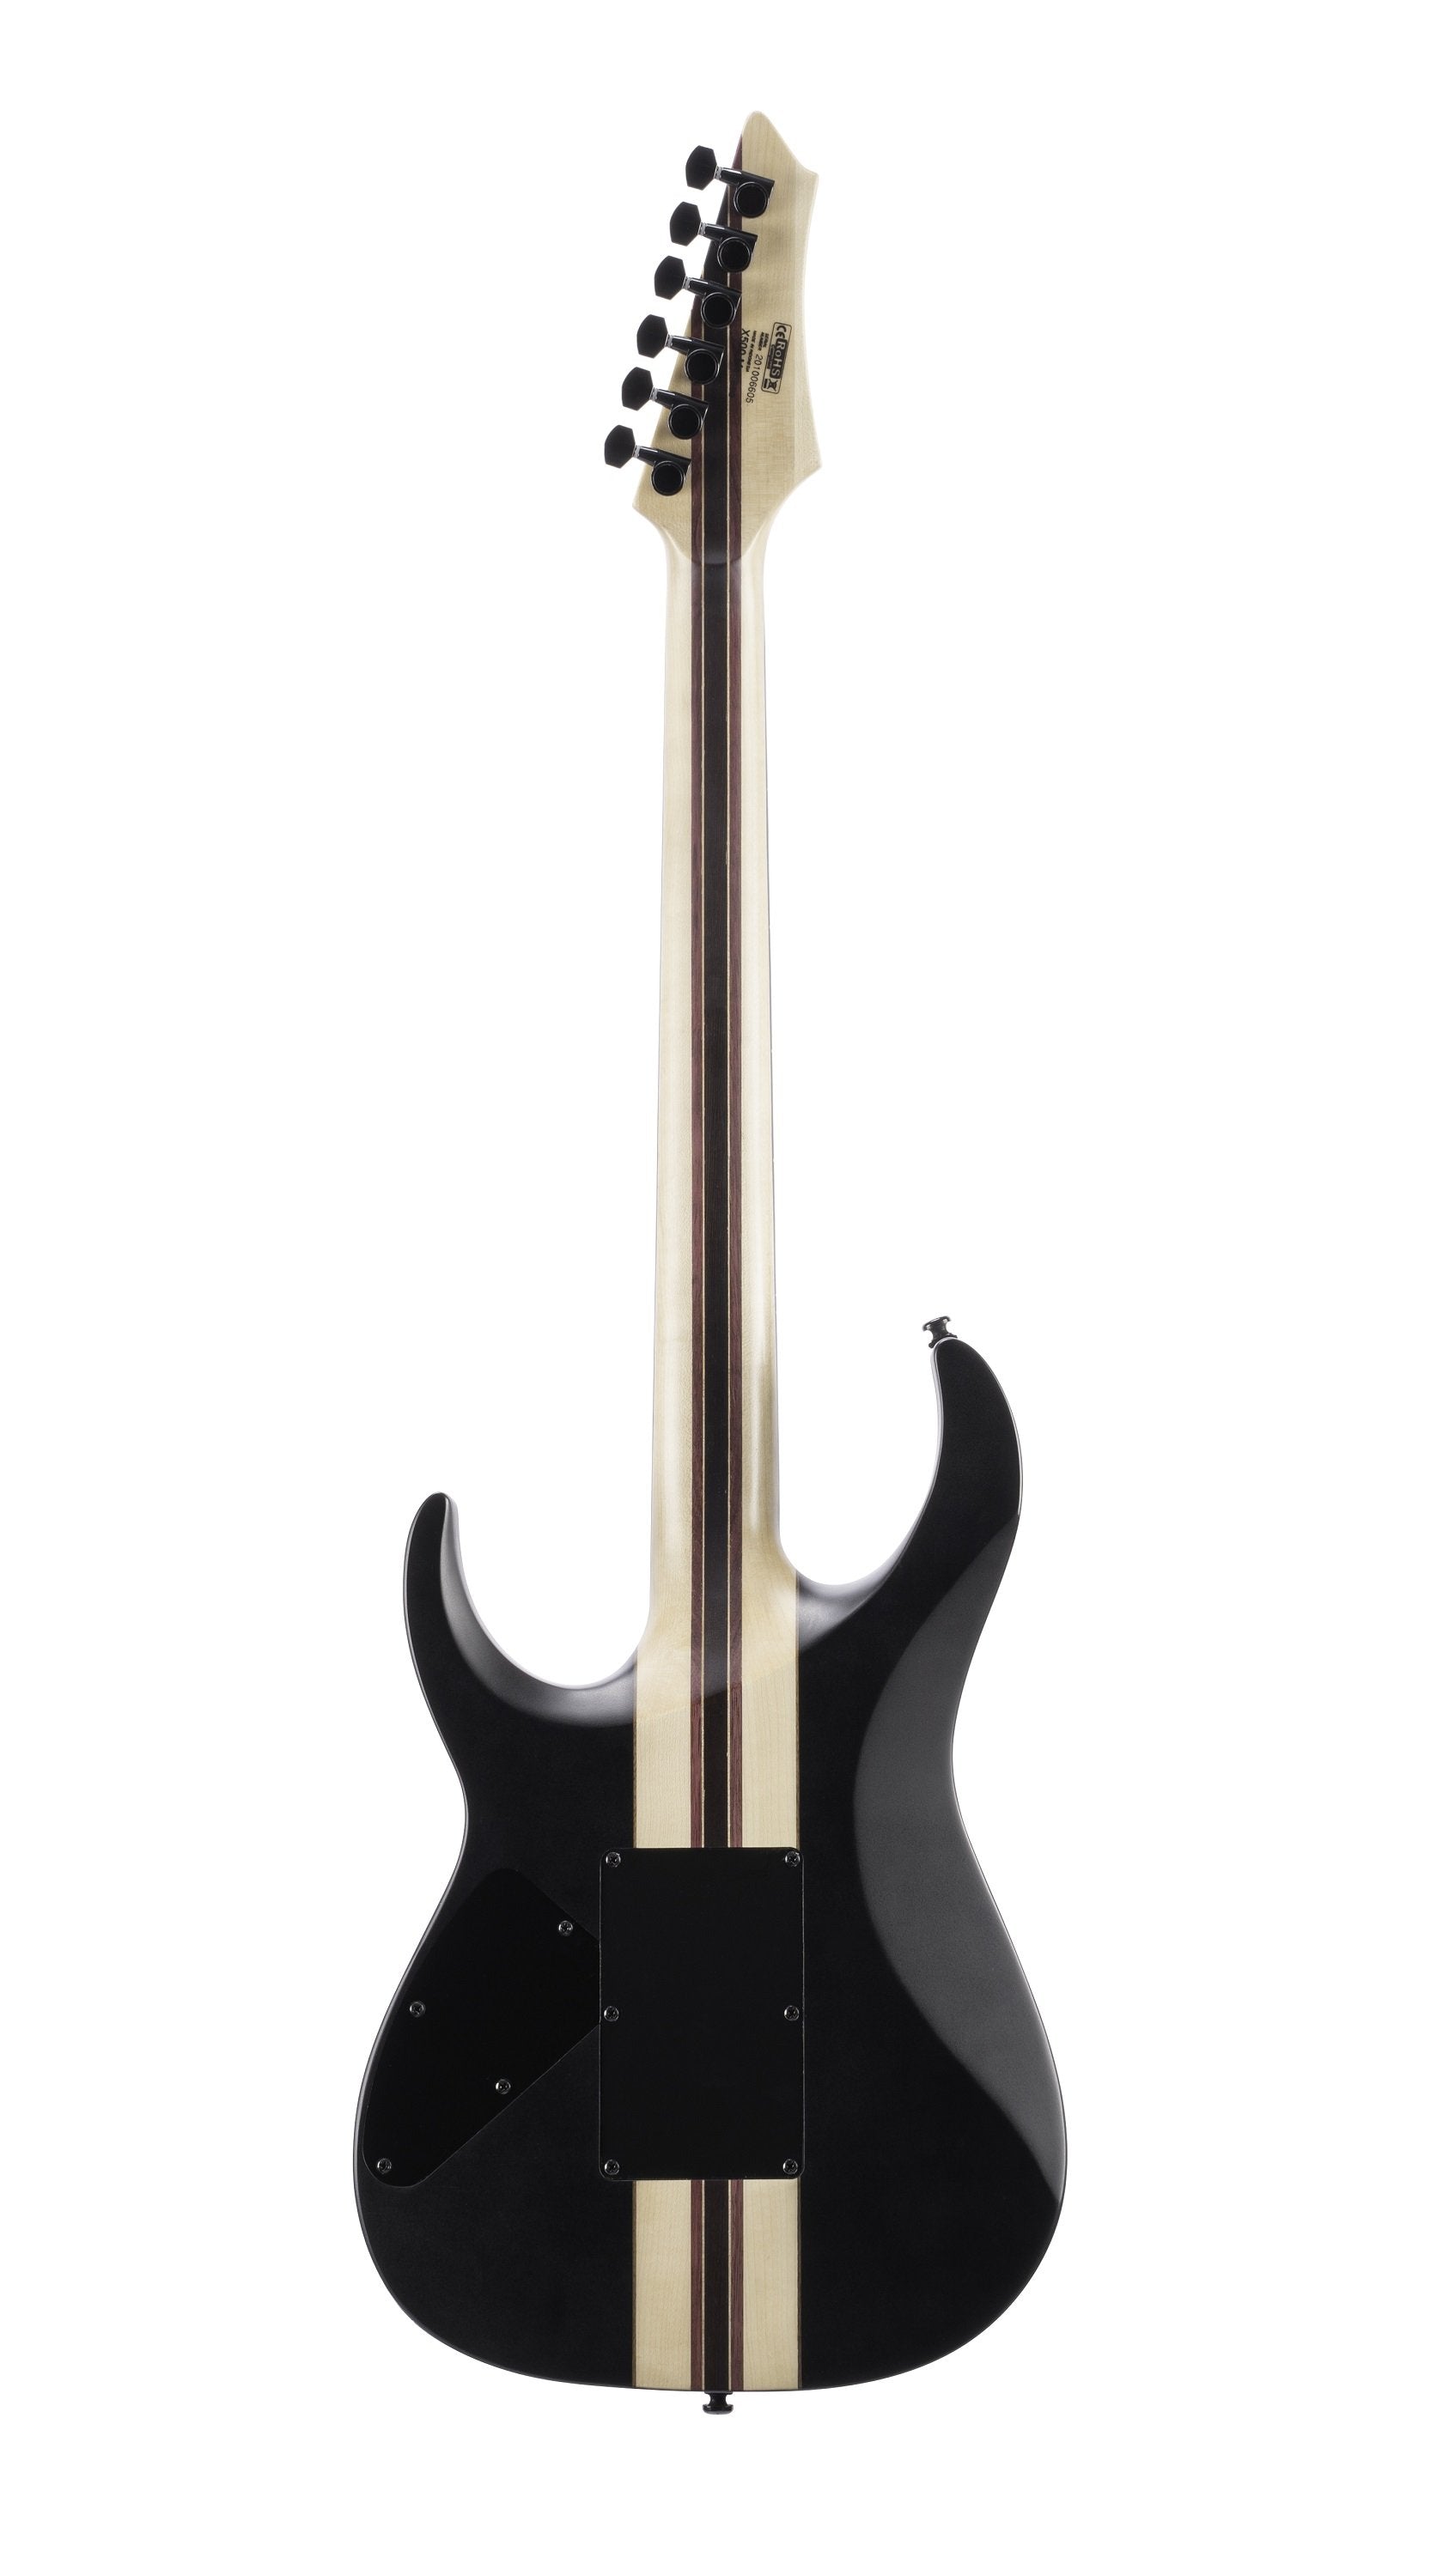 Cort X500 Menace Black Satin-Richards Guitars Of Stratford Upon Avon